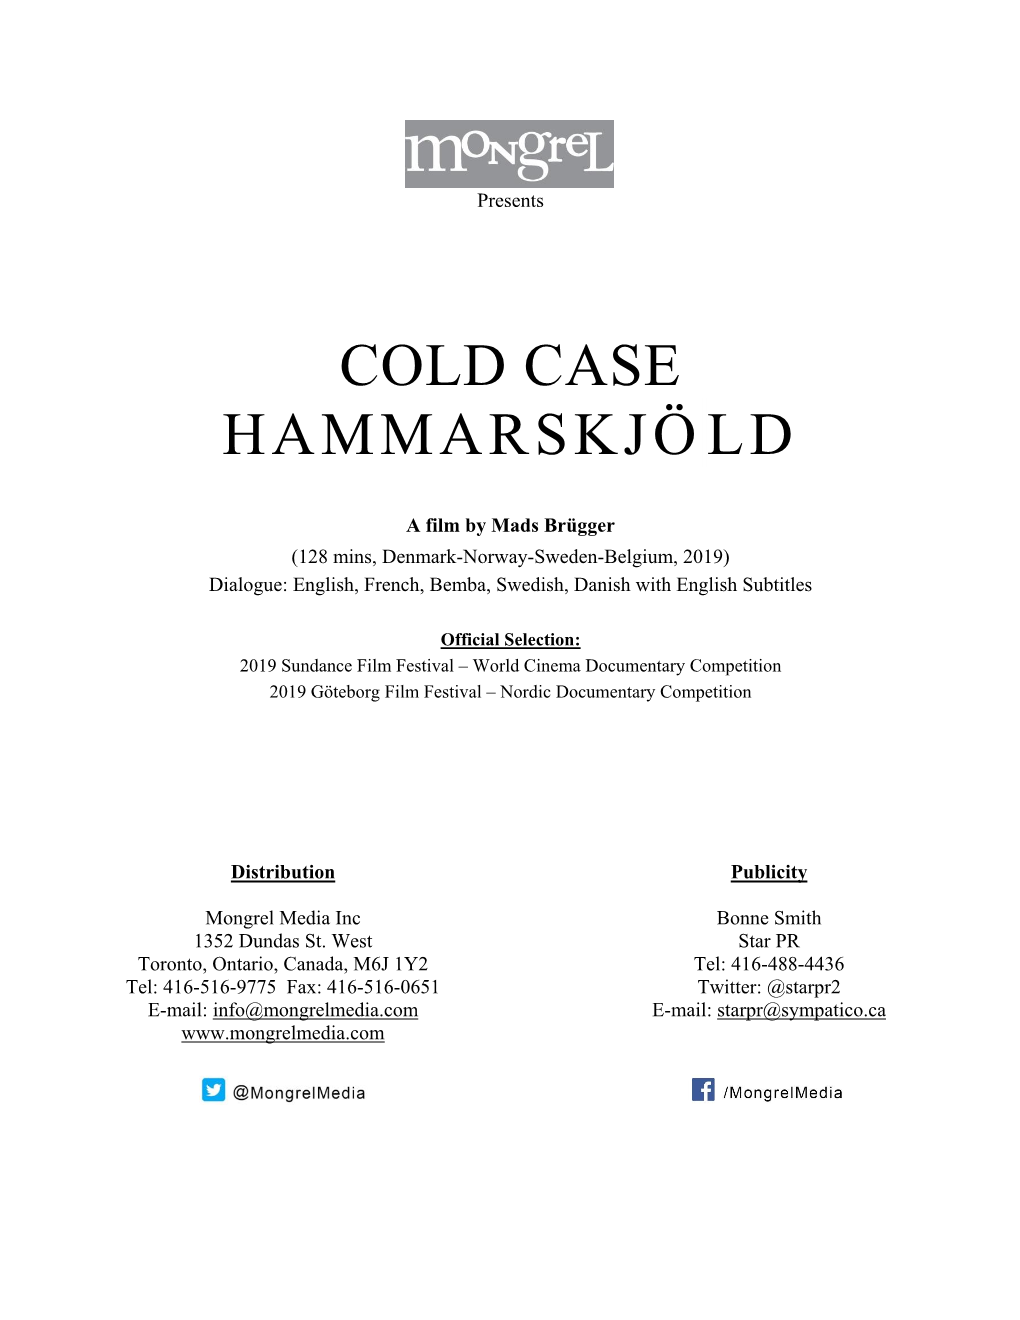 COLD CASE HAMMARSKJÖLD Press Kit SYNOPSIS